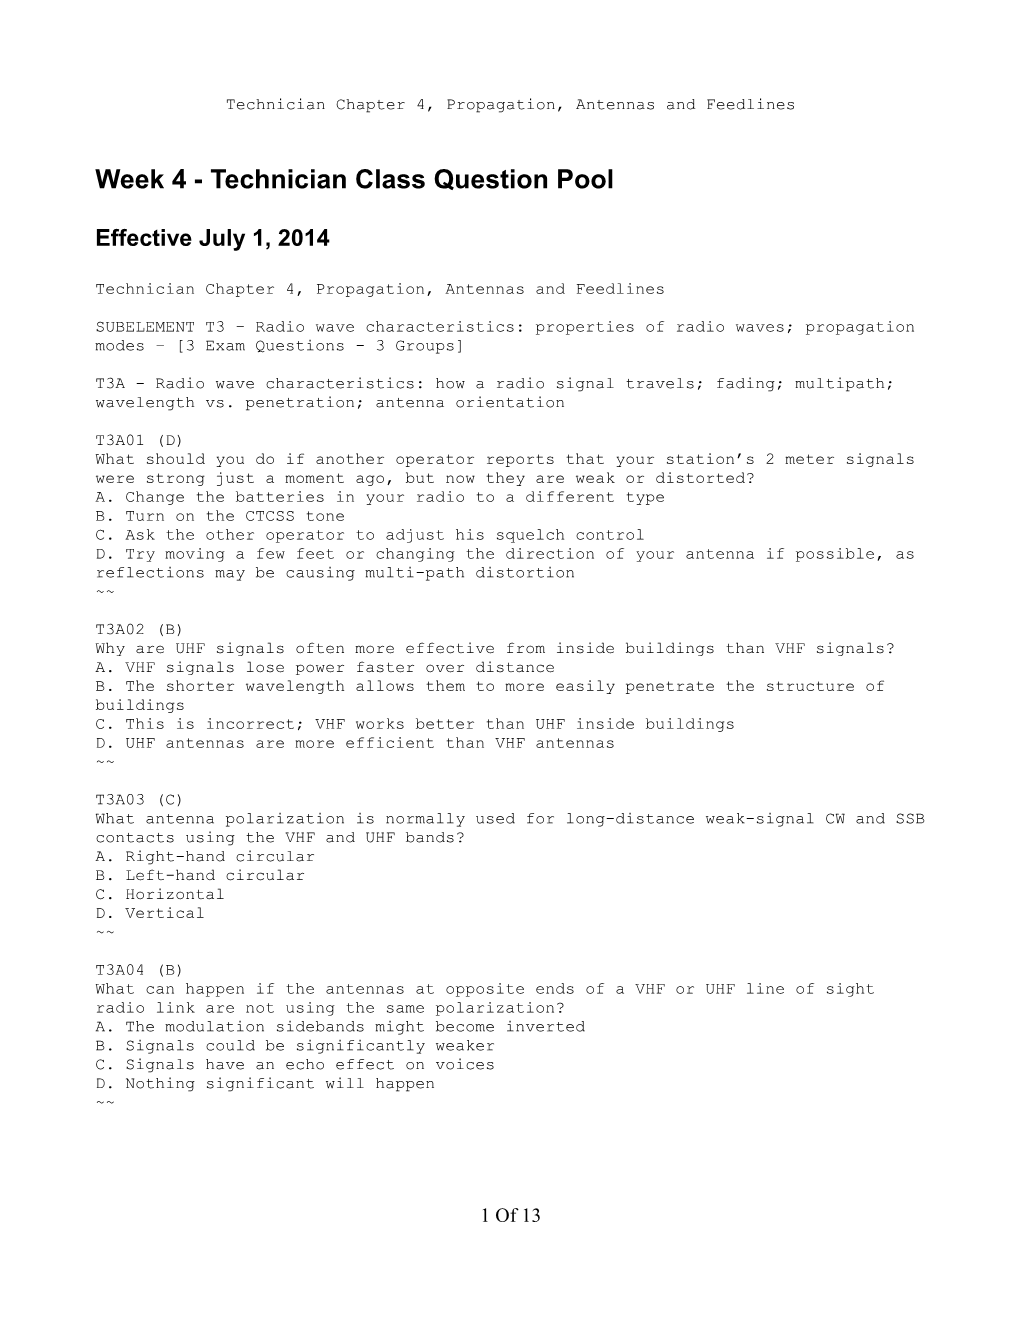 Week 4 - Technician Class Question Pool